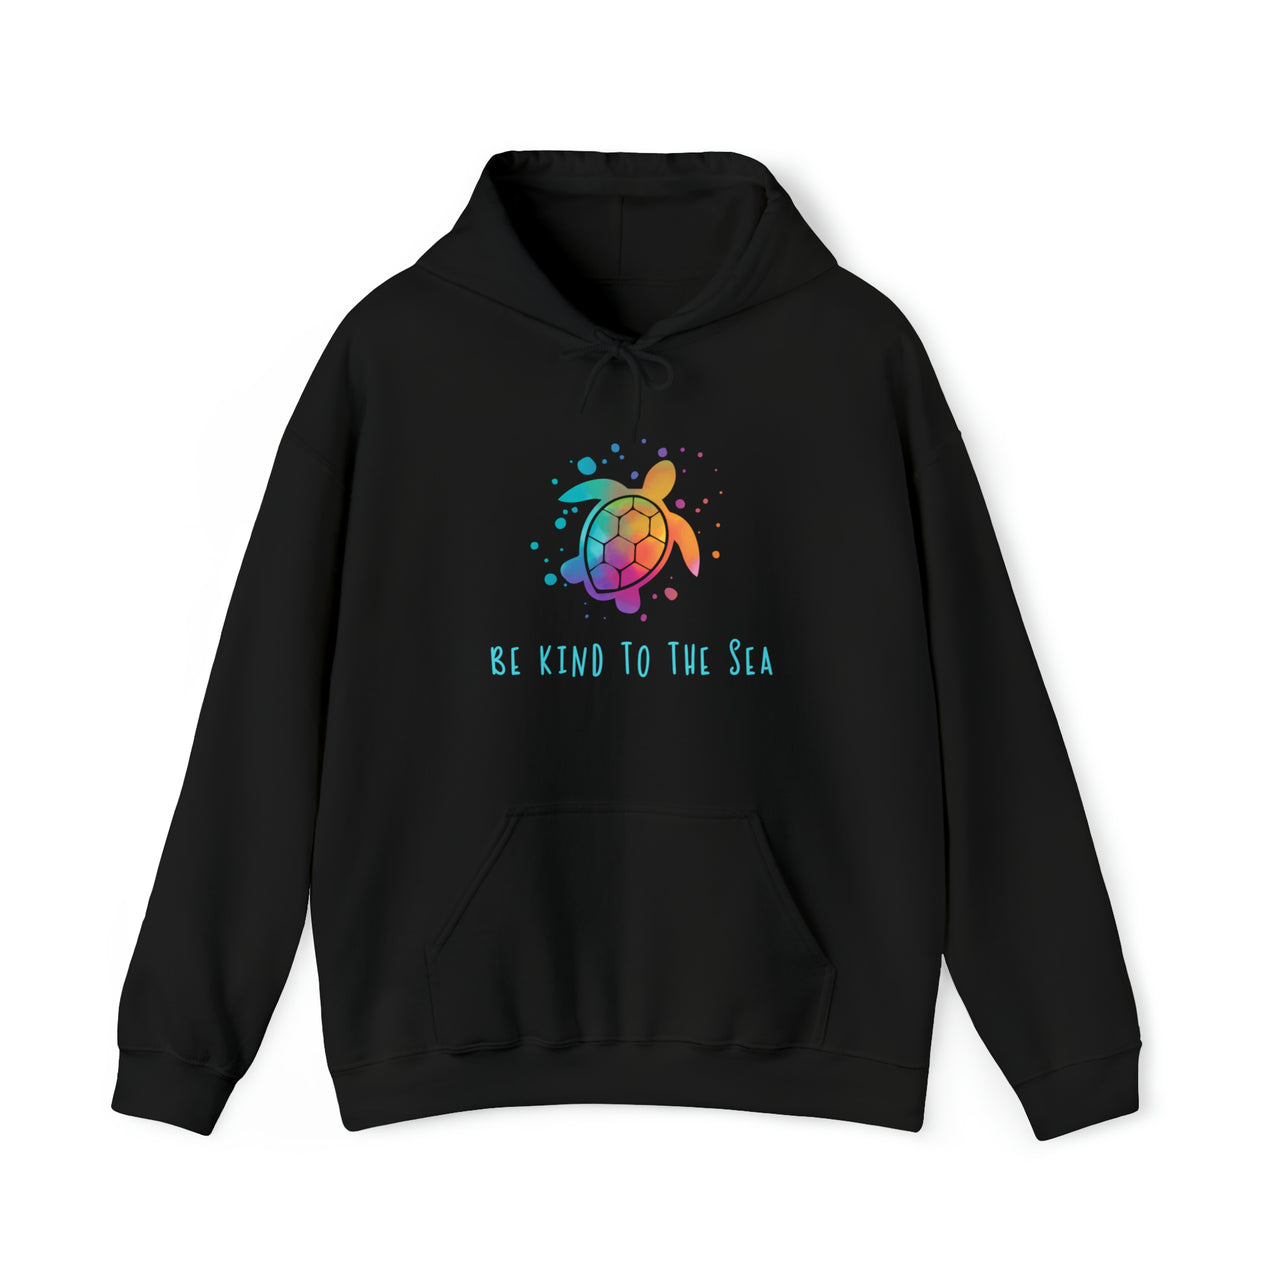 Be Kind to the Sea Hooded Sweatshirt, Unisex, Black